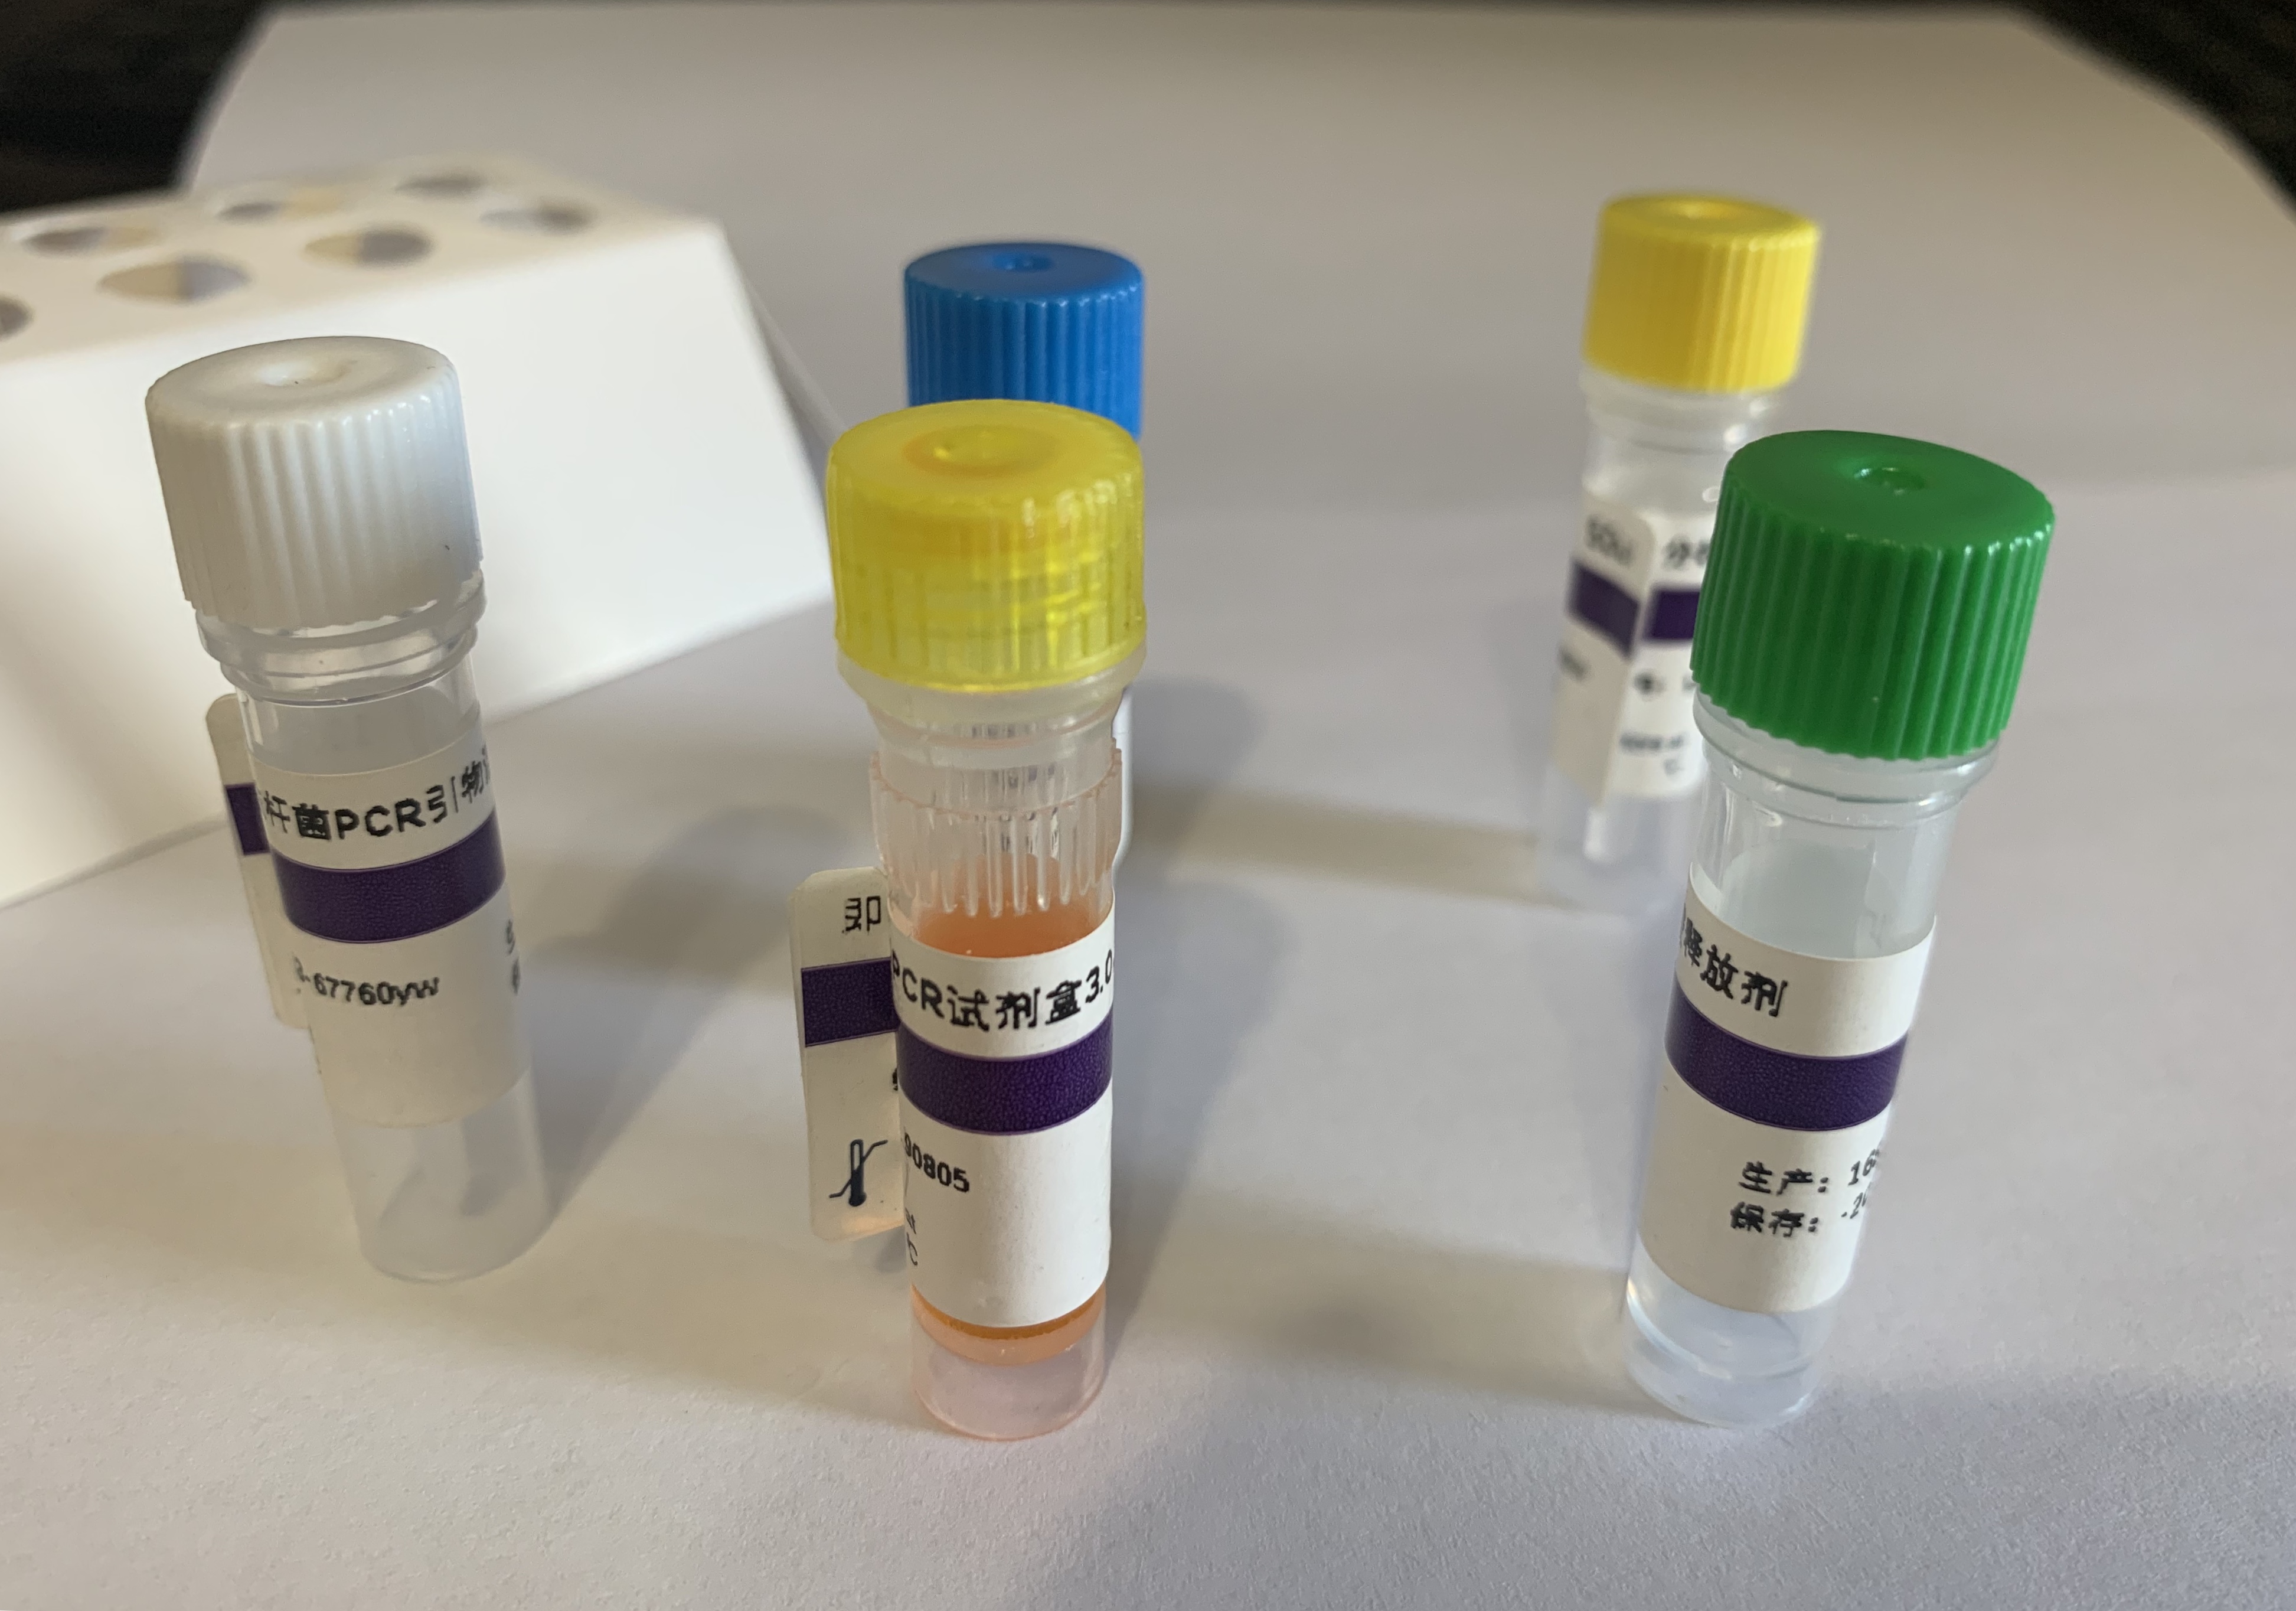 水泡性口炎病毒新泽西型探针法荧光定量RT-PCR剂盒